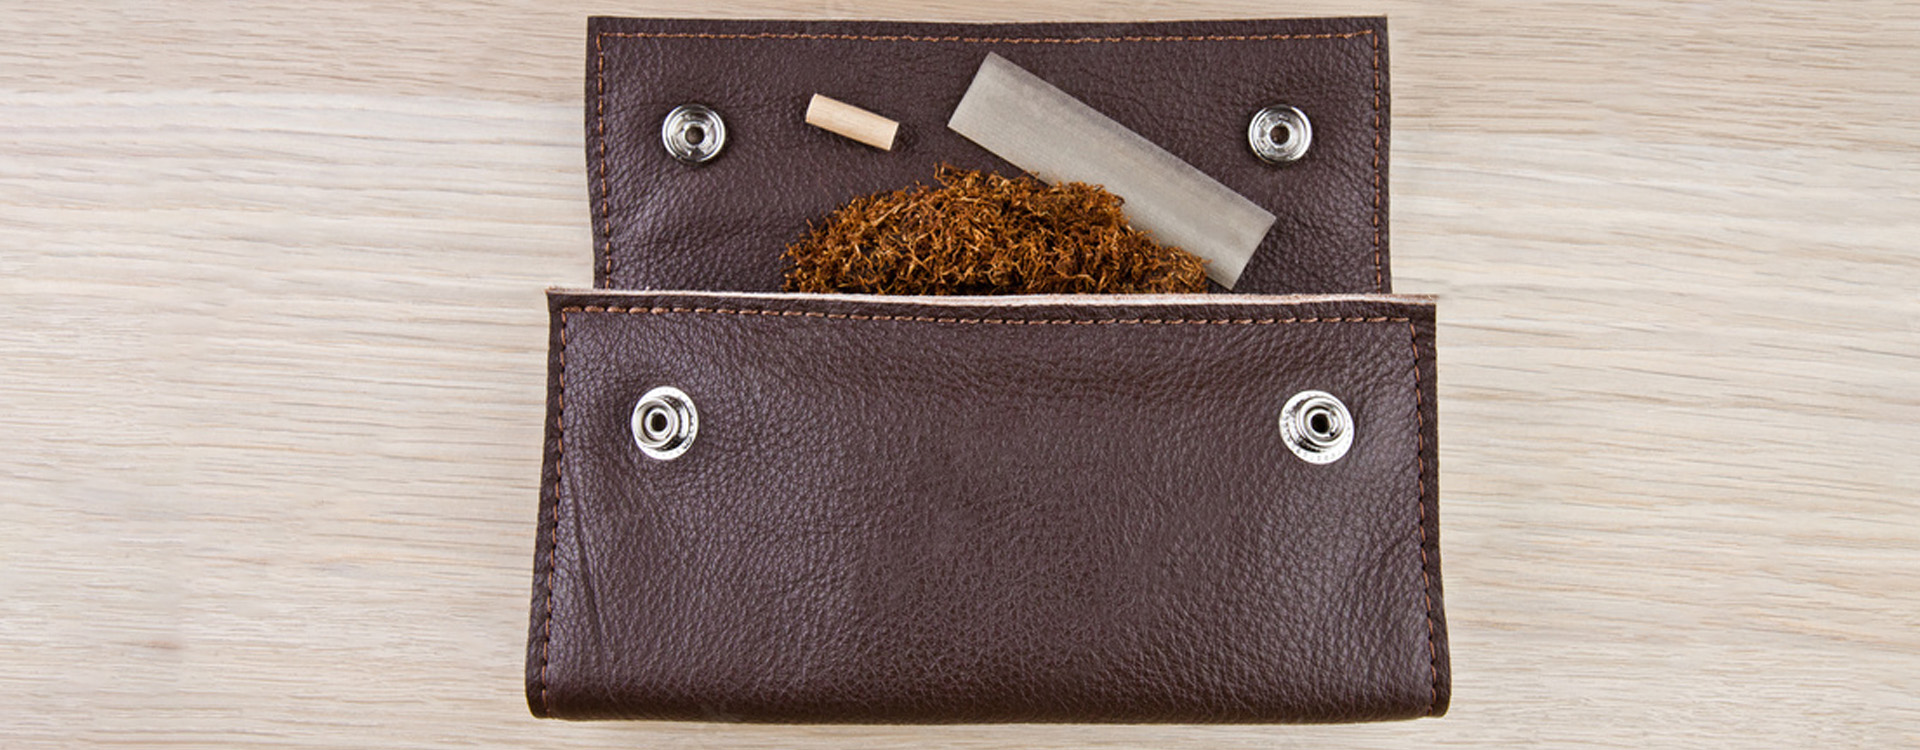 Kožené puzdro na tabak otvorené, kovové cvoky, rozsypaný tabak, cigaretový papierik a filter